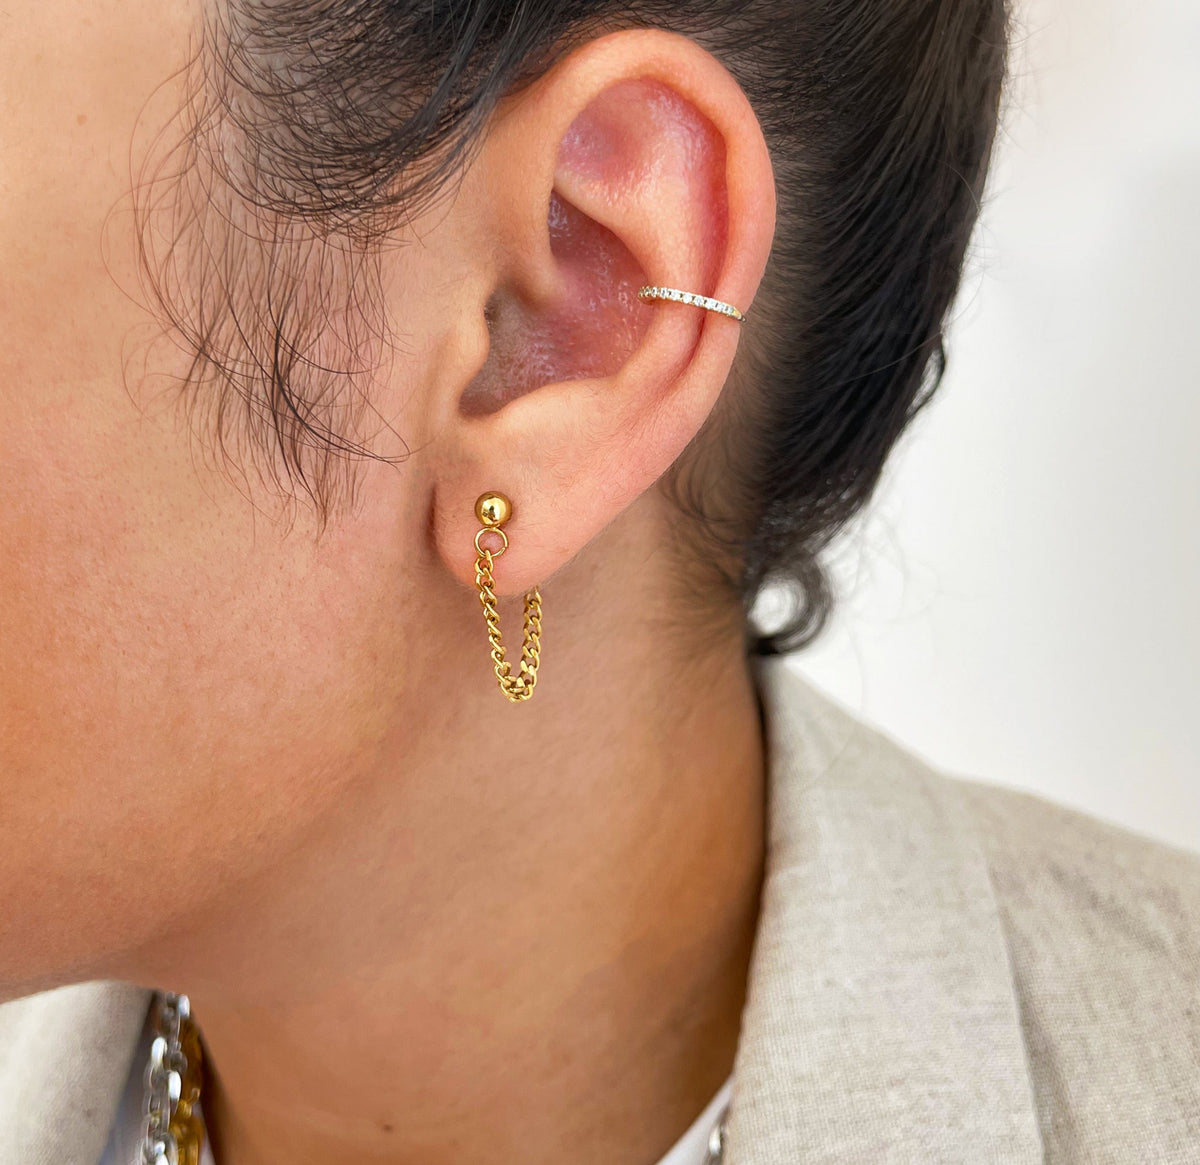 gold loop chain earring waterproof jewelry